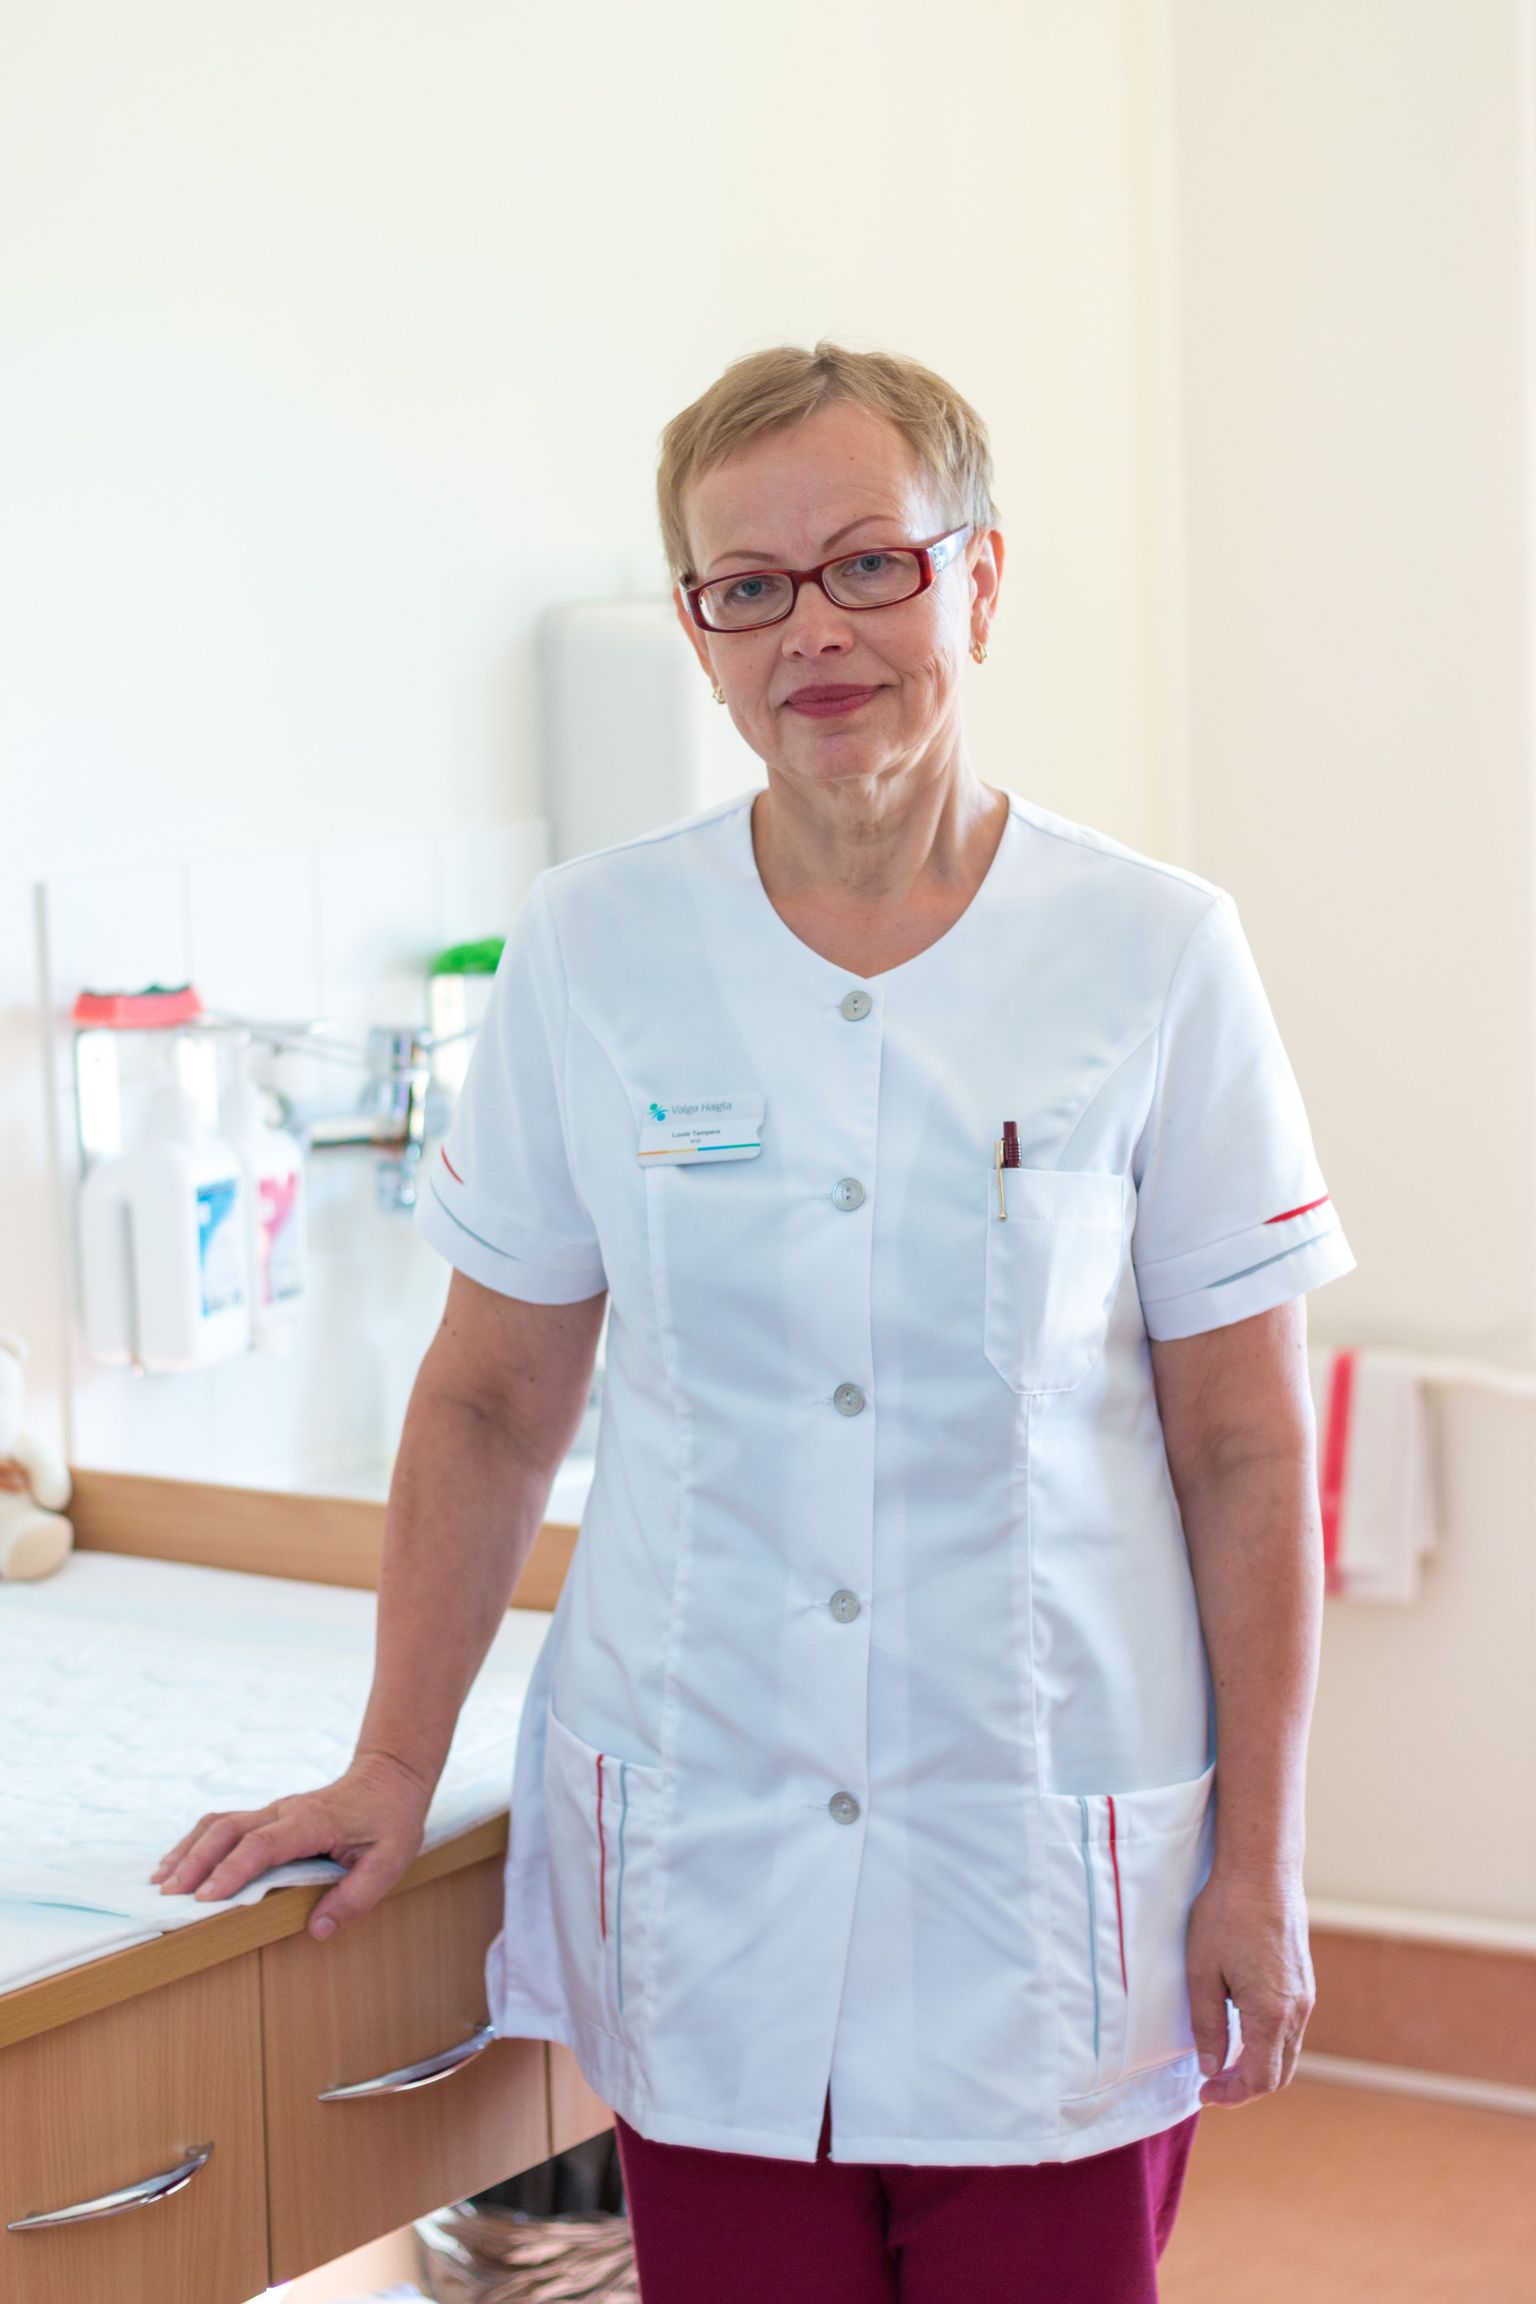 Valga haigla lastearst Luule Tampere on maakonnahaiglas lapsi ja ka suuremaid patsiente ravinud juba 31 aastat.